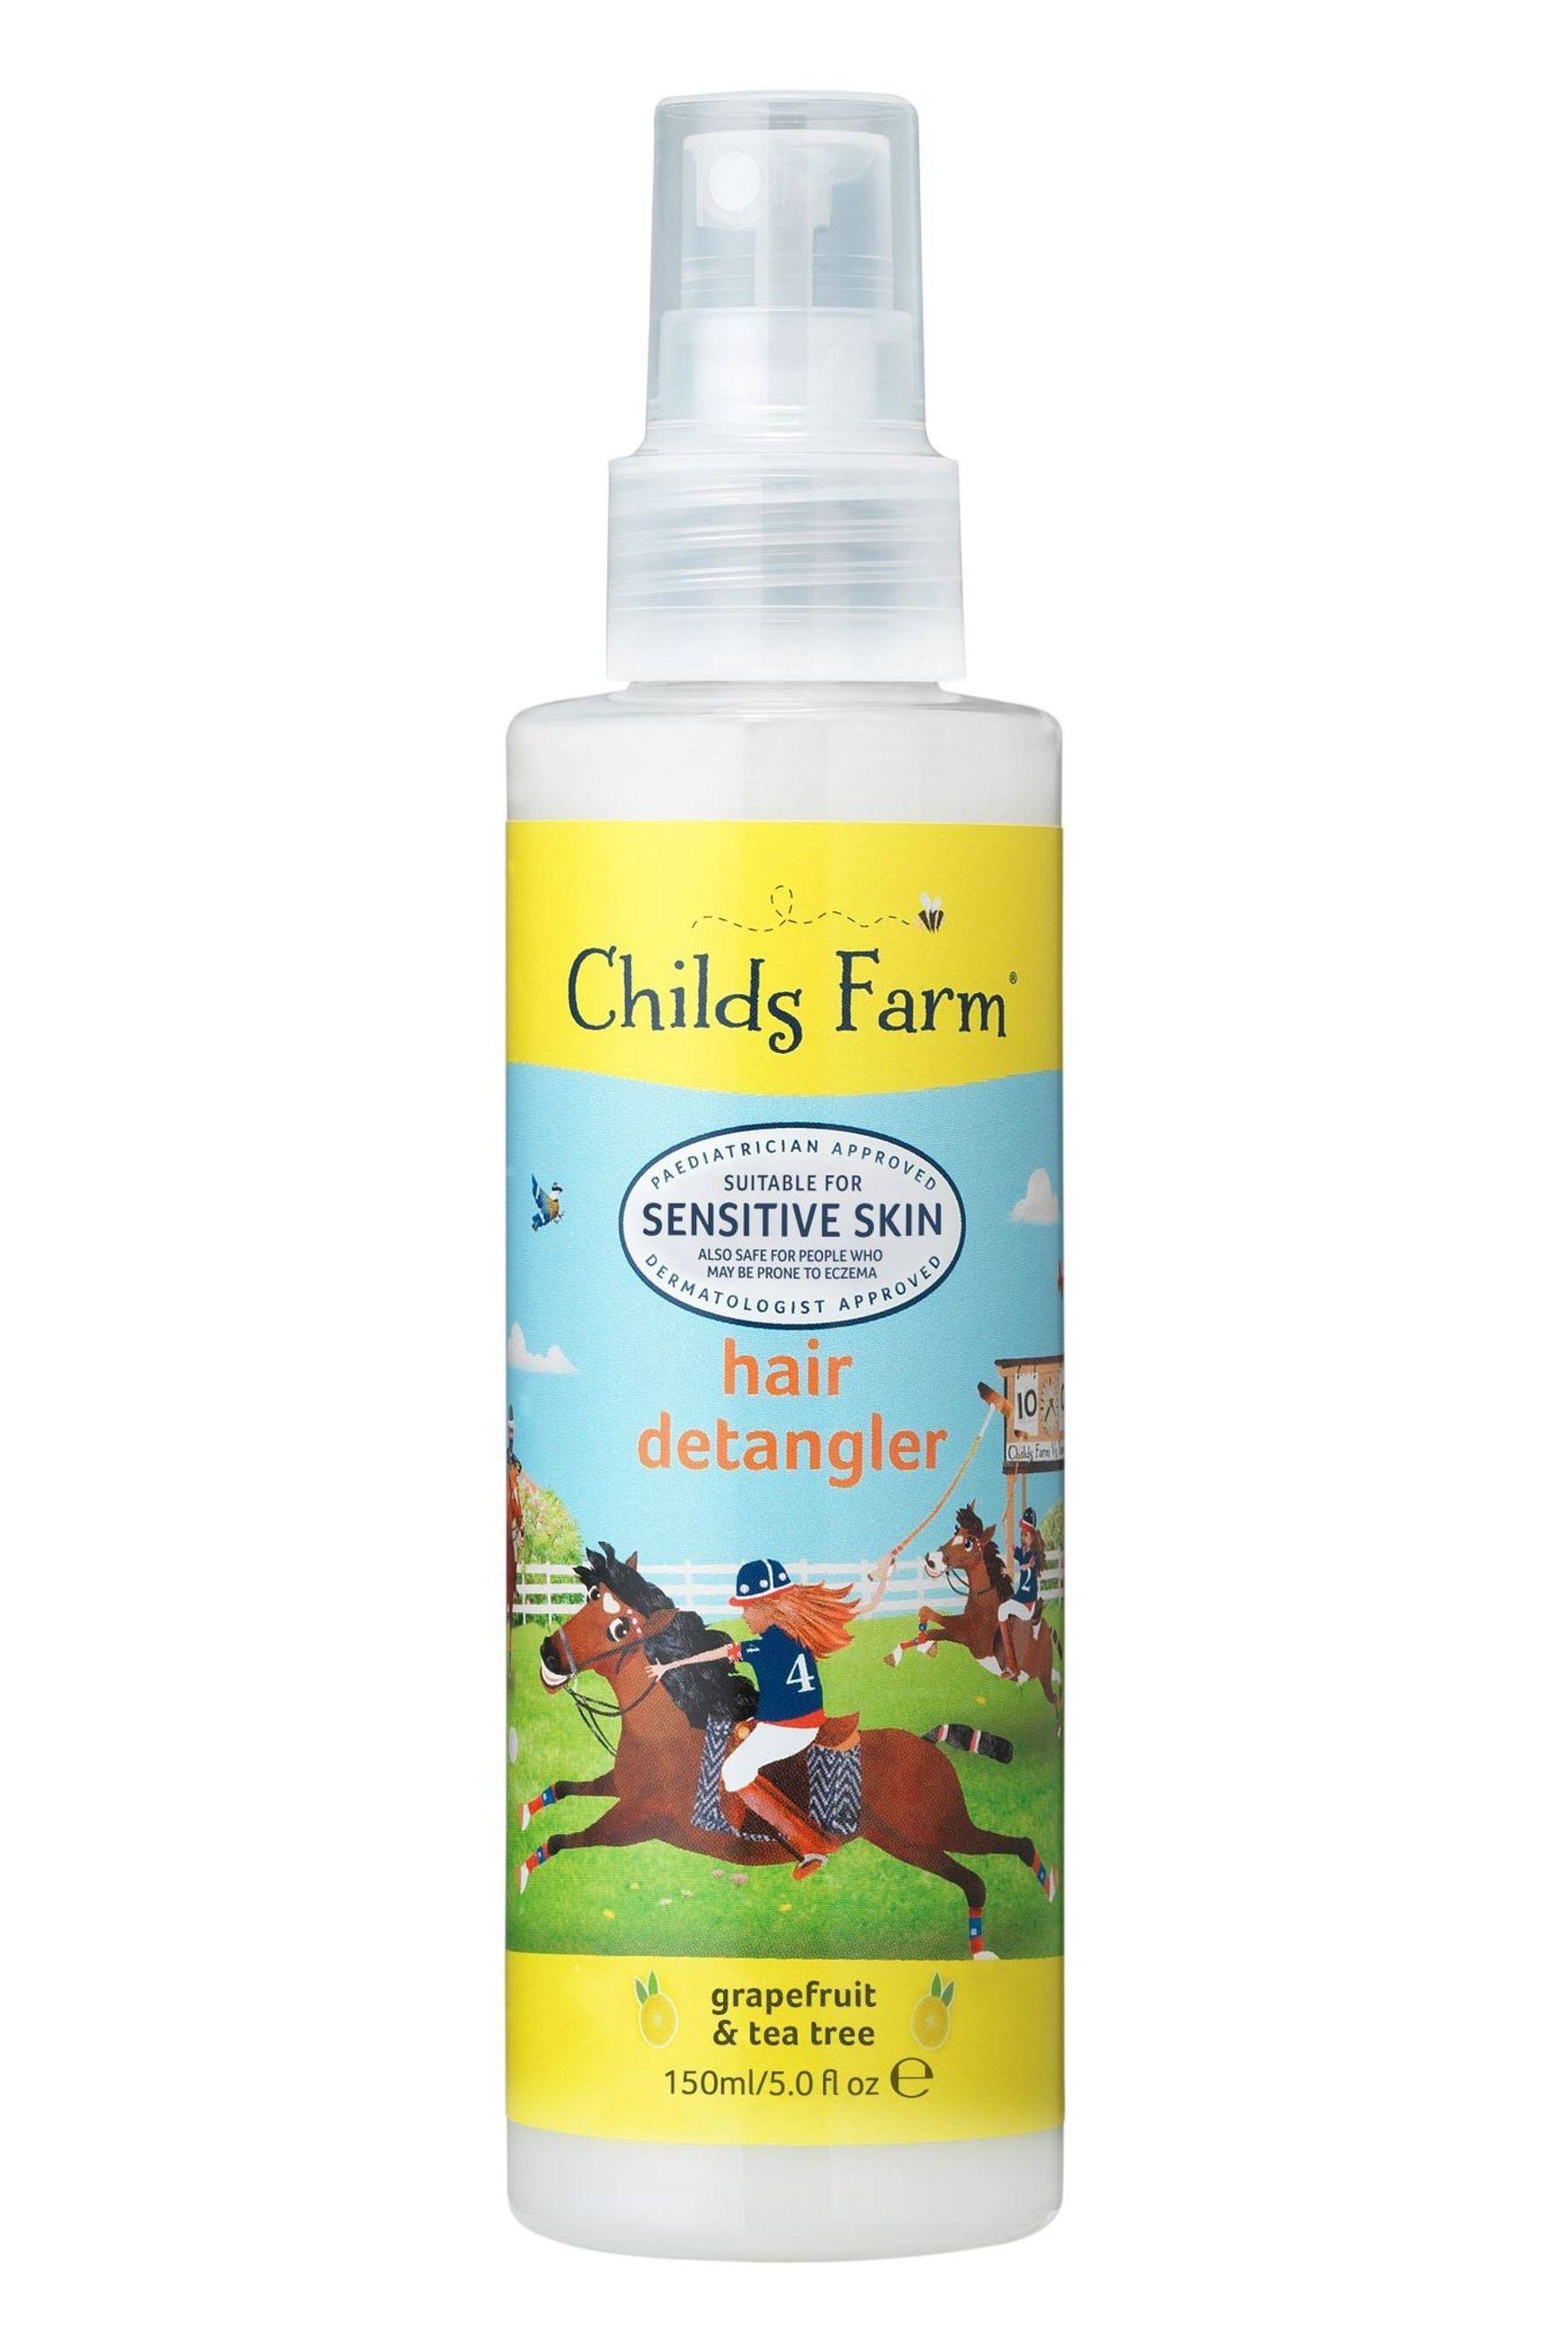 Childs Farm Hair Detangler - Grapefruit and Tea Tree Oil, 150ml